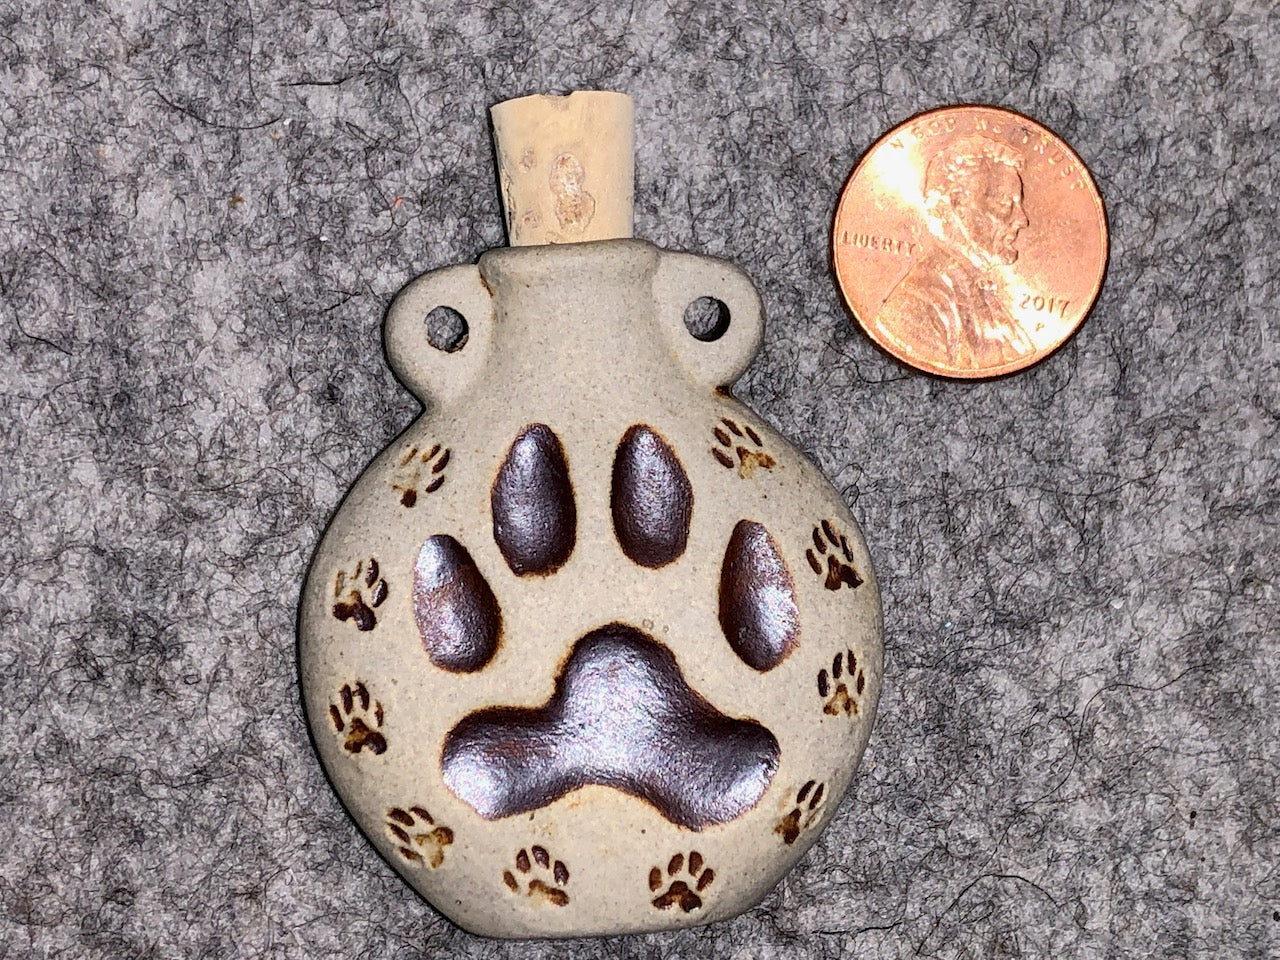 Peruvian Ceramic Vessel—High Fired Dog Paw Print